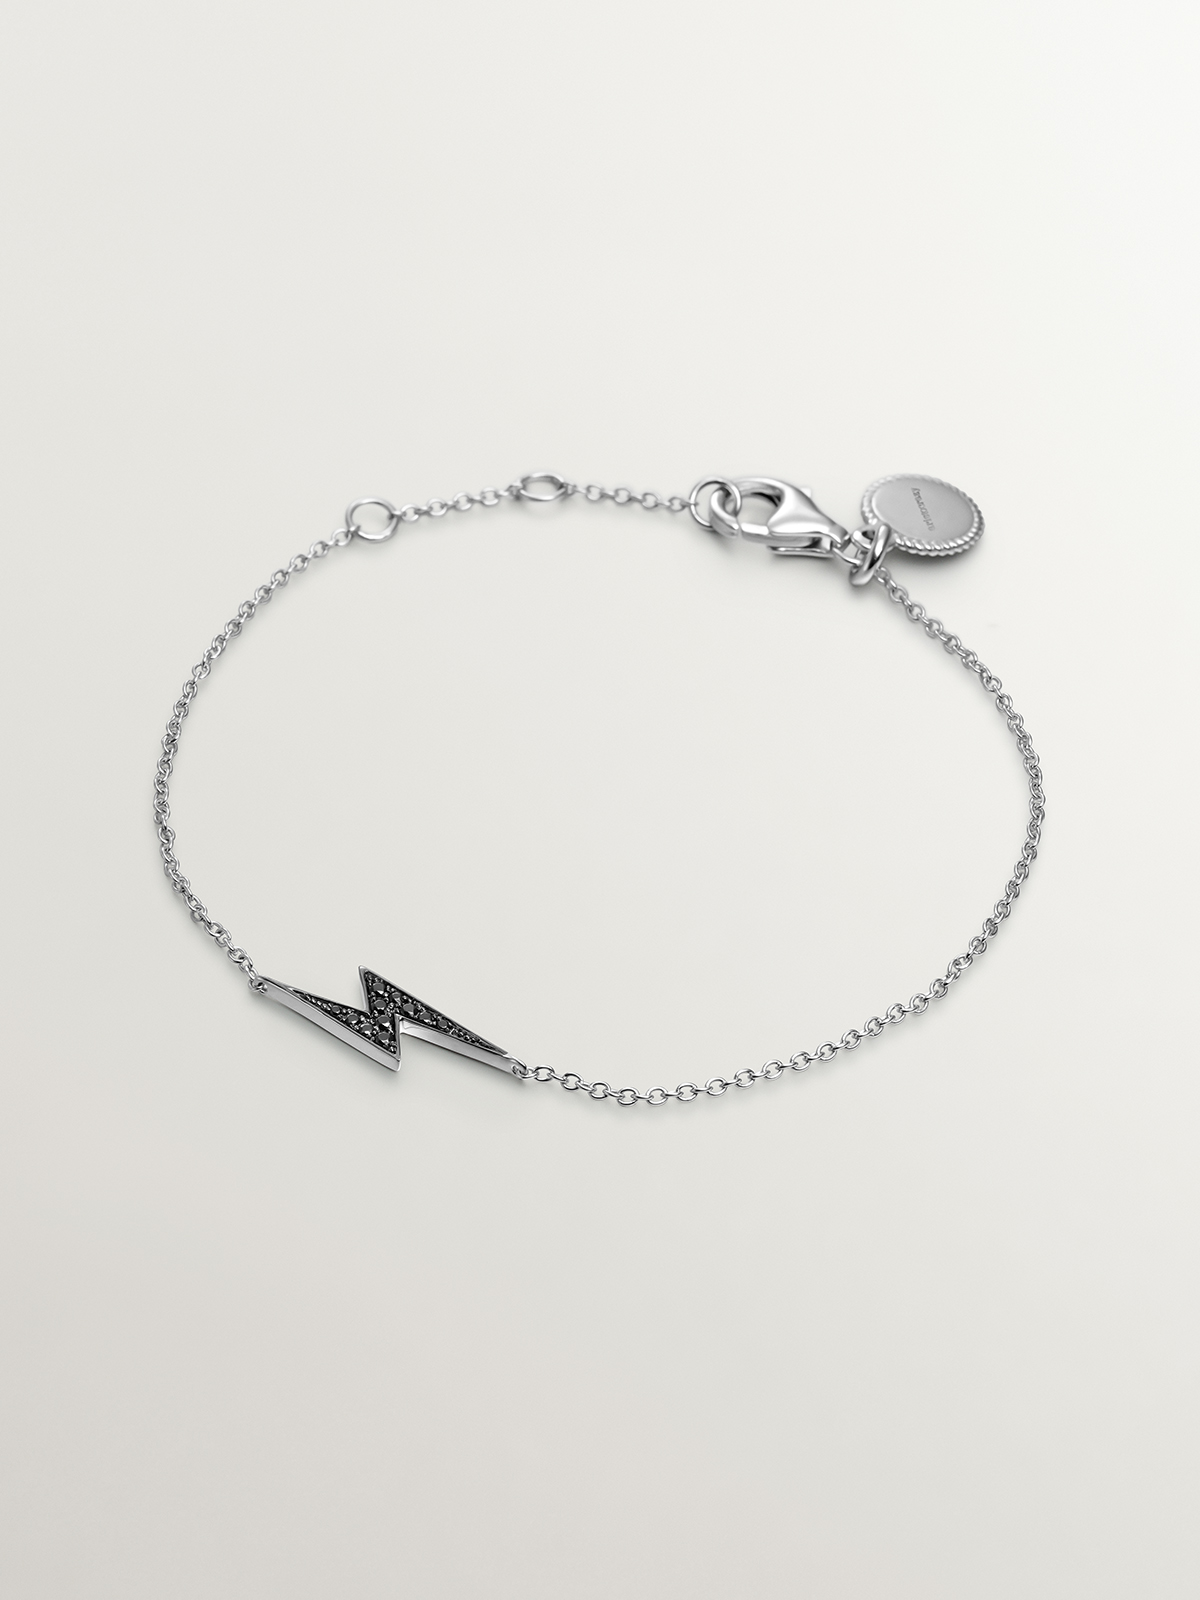 925 Silver bracelet with black spinel star